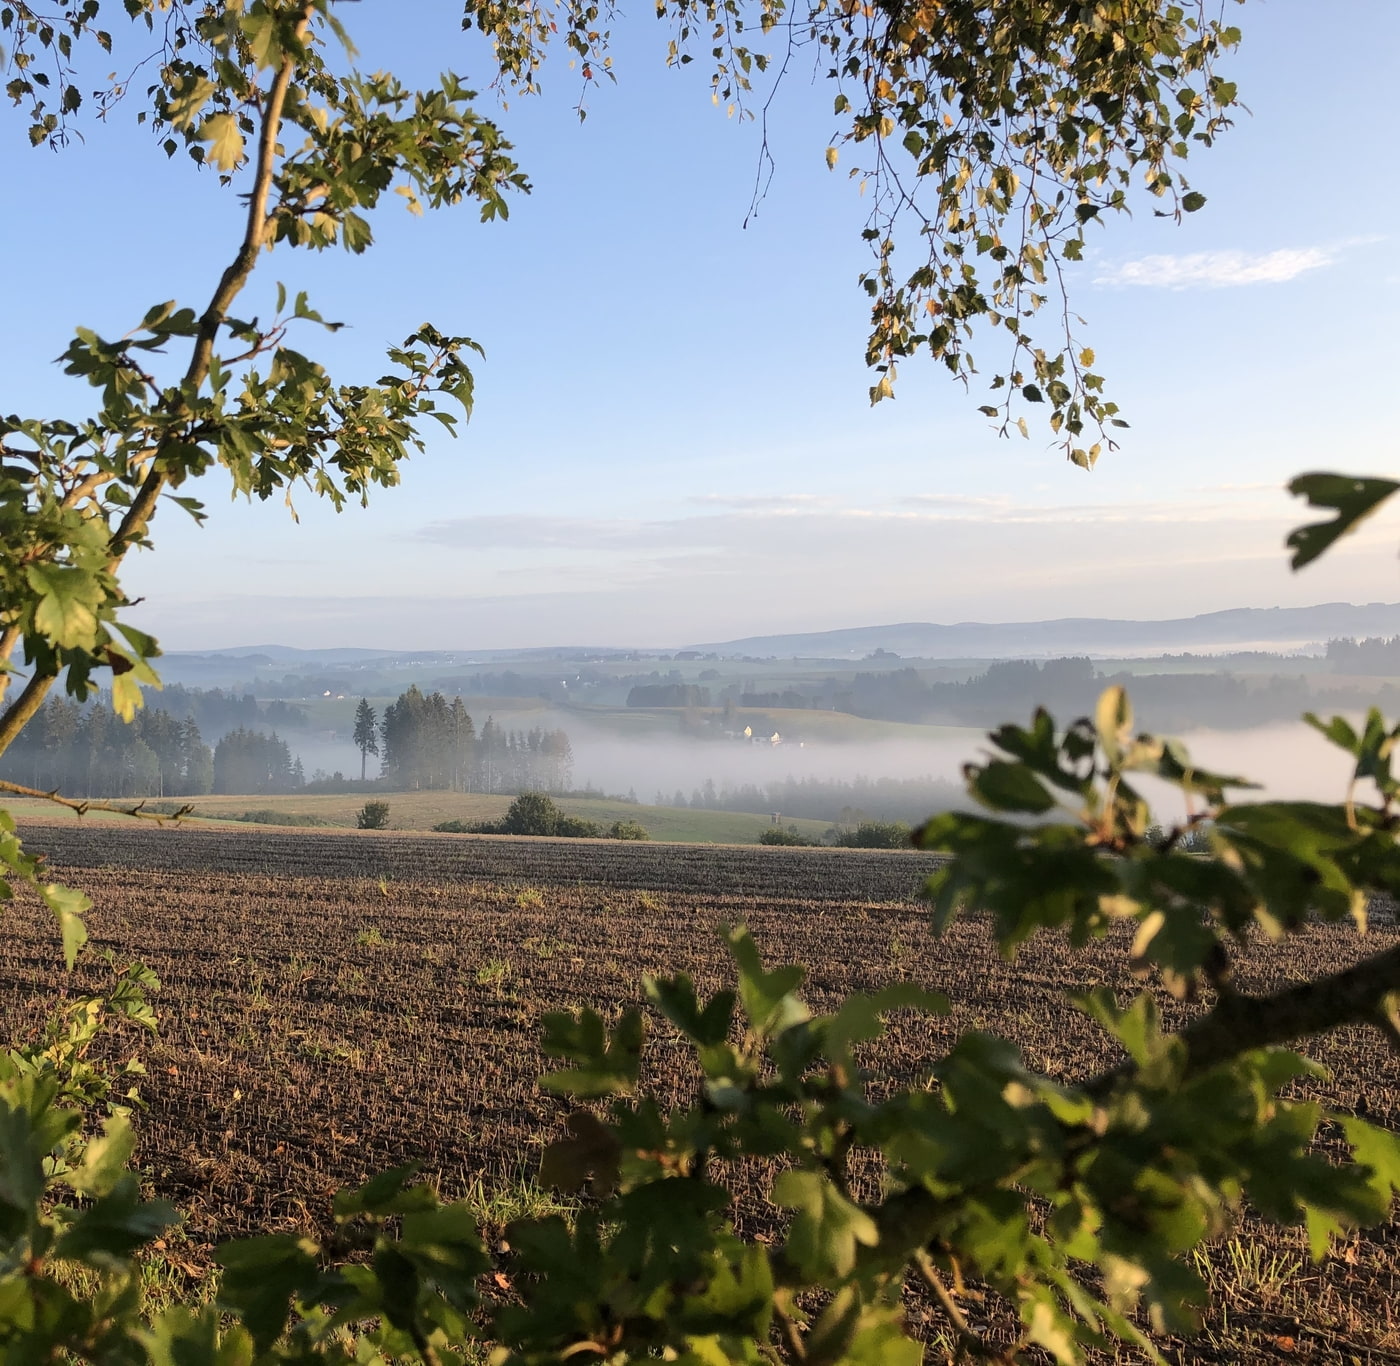 Landschaftsbild vom Mühlviertel mit dusigem Nebel über den Feldern